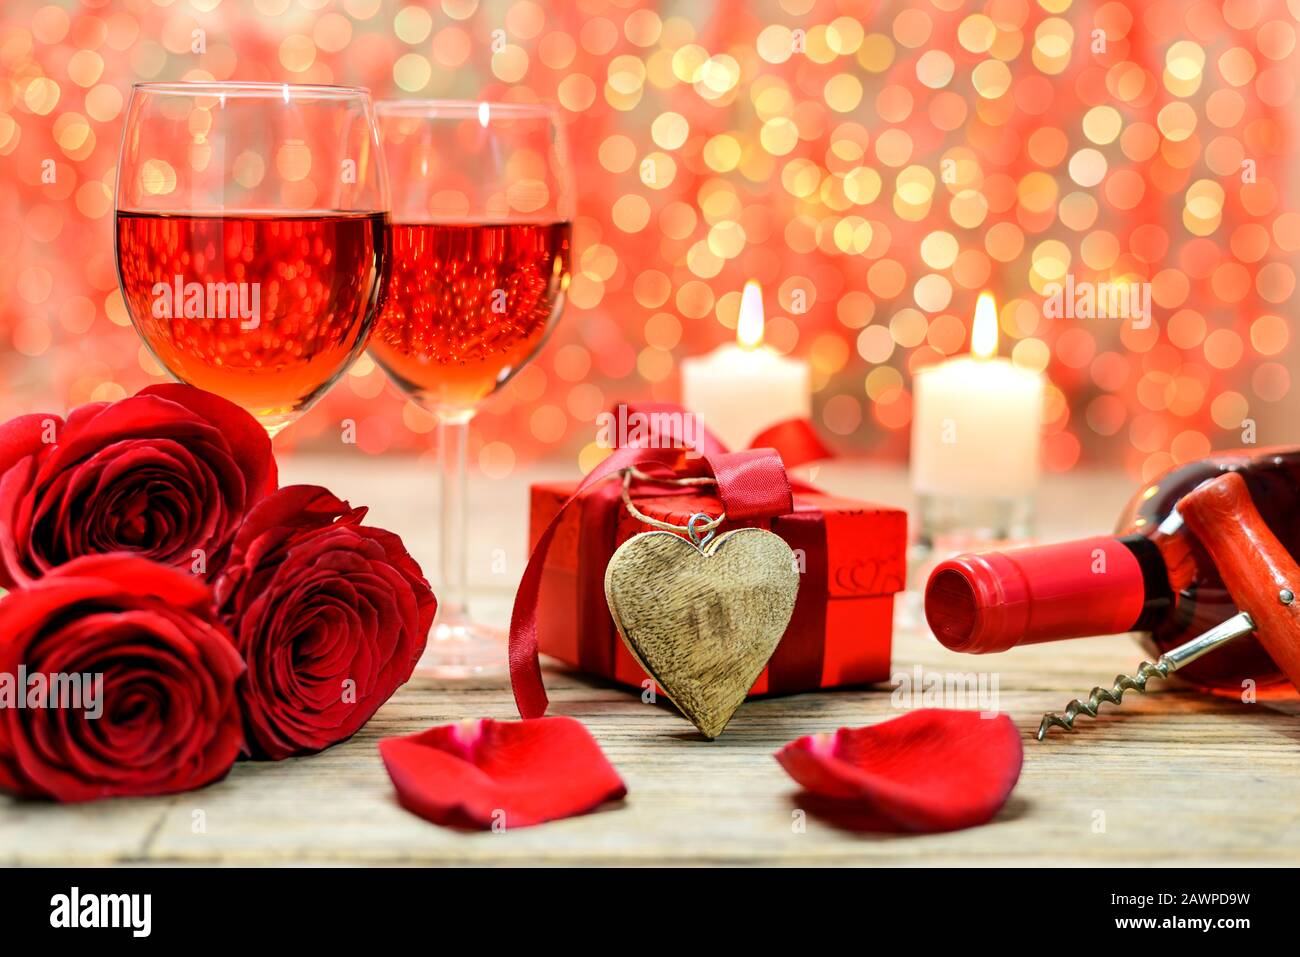 Coeur en bois, roses rouges, boîte à cadeaux, bouteille de vin, corkscrew, verres de vin et bougies brûlantes sur une vieille table en bois devant une lumière floue Banque D'Images